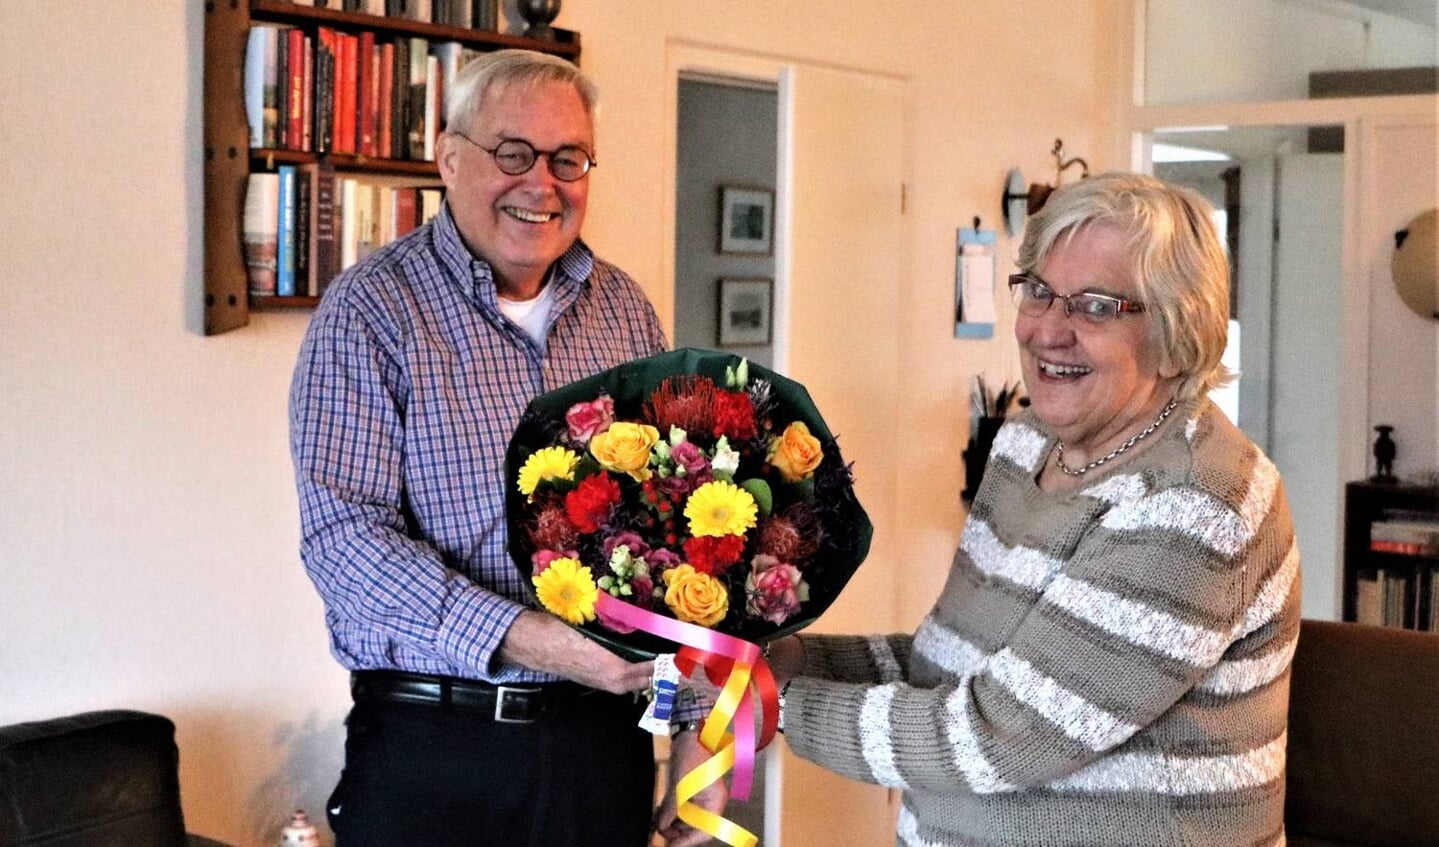 foto 2020 week 51 pag,7 (December 2020.jpg)
Voorzitter Paul Meuwese van de Historische Kring D’ Oude School bracht Lies Haan een bloemenhulde als dank voor haar enorme inzet voor de vereniging. (december 2020)

